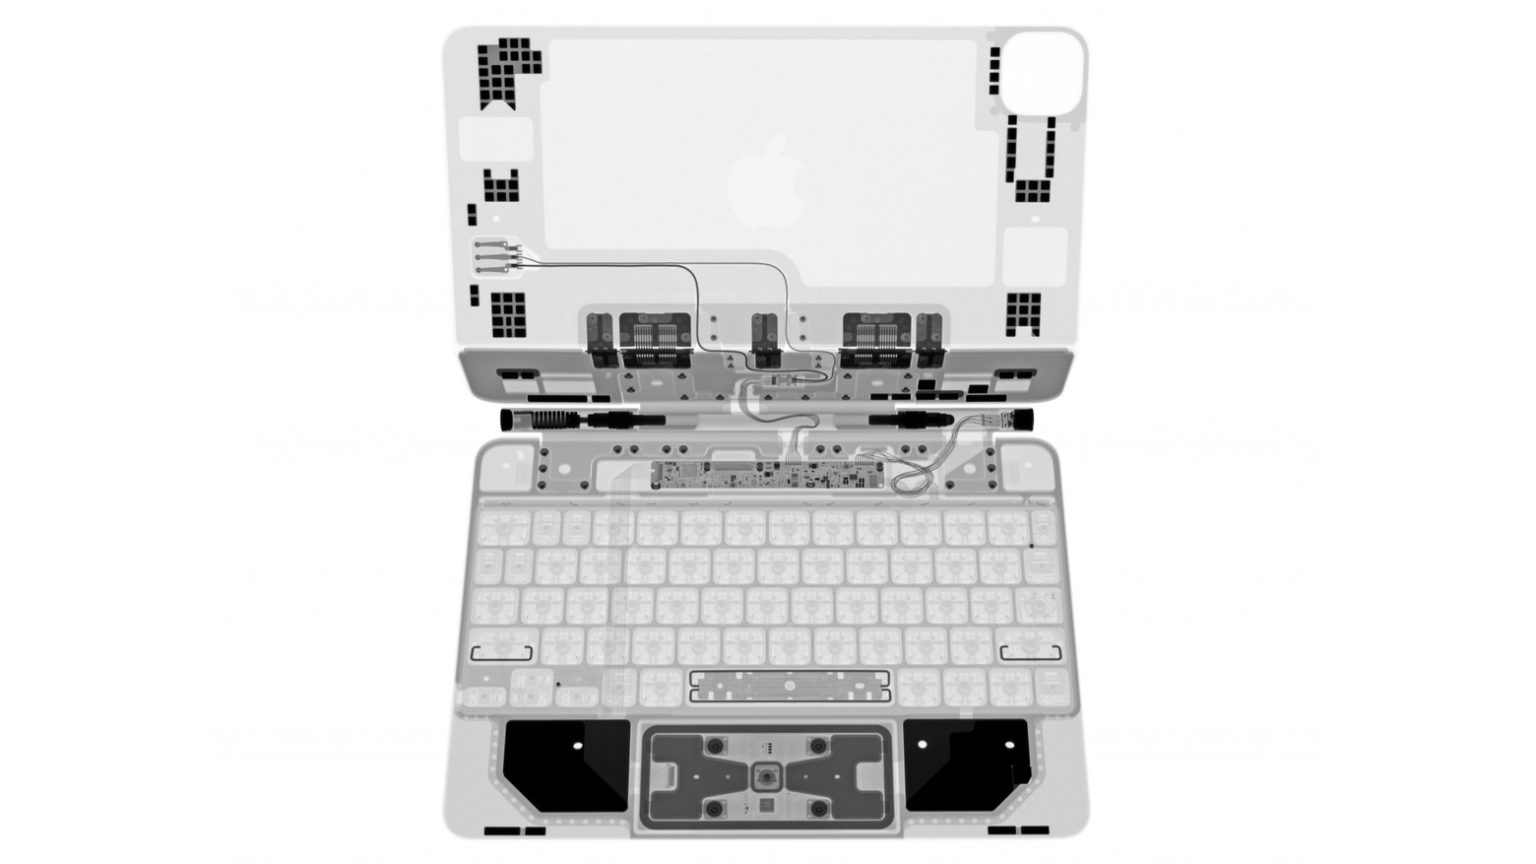 iPad Pro Magic Keyboard in X-ray